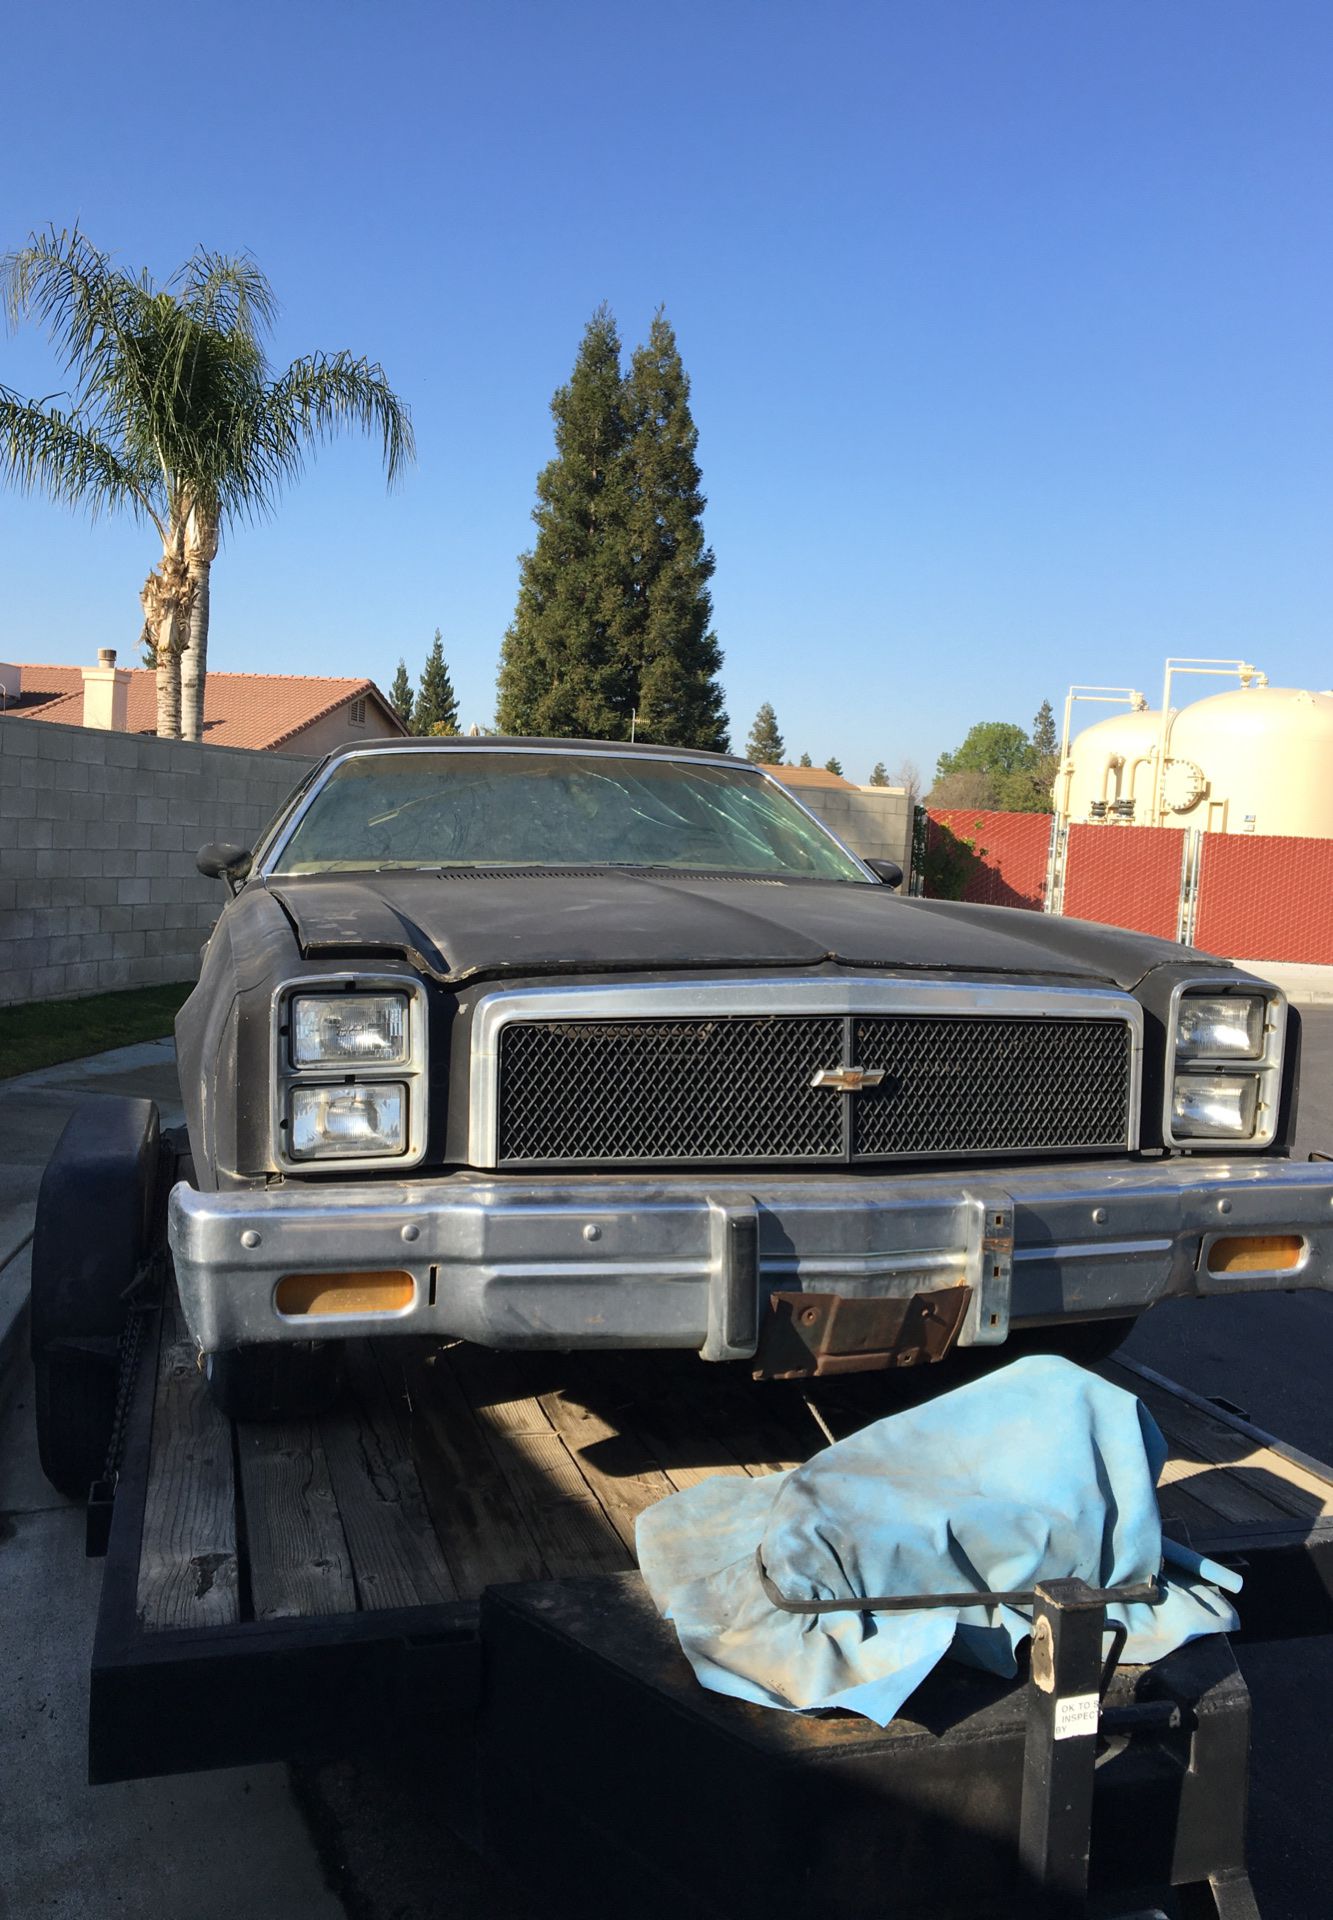 76 Chevy El Camino all or parts 500.00